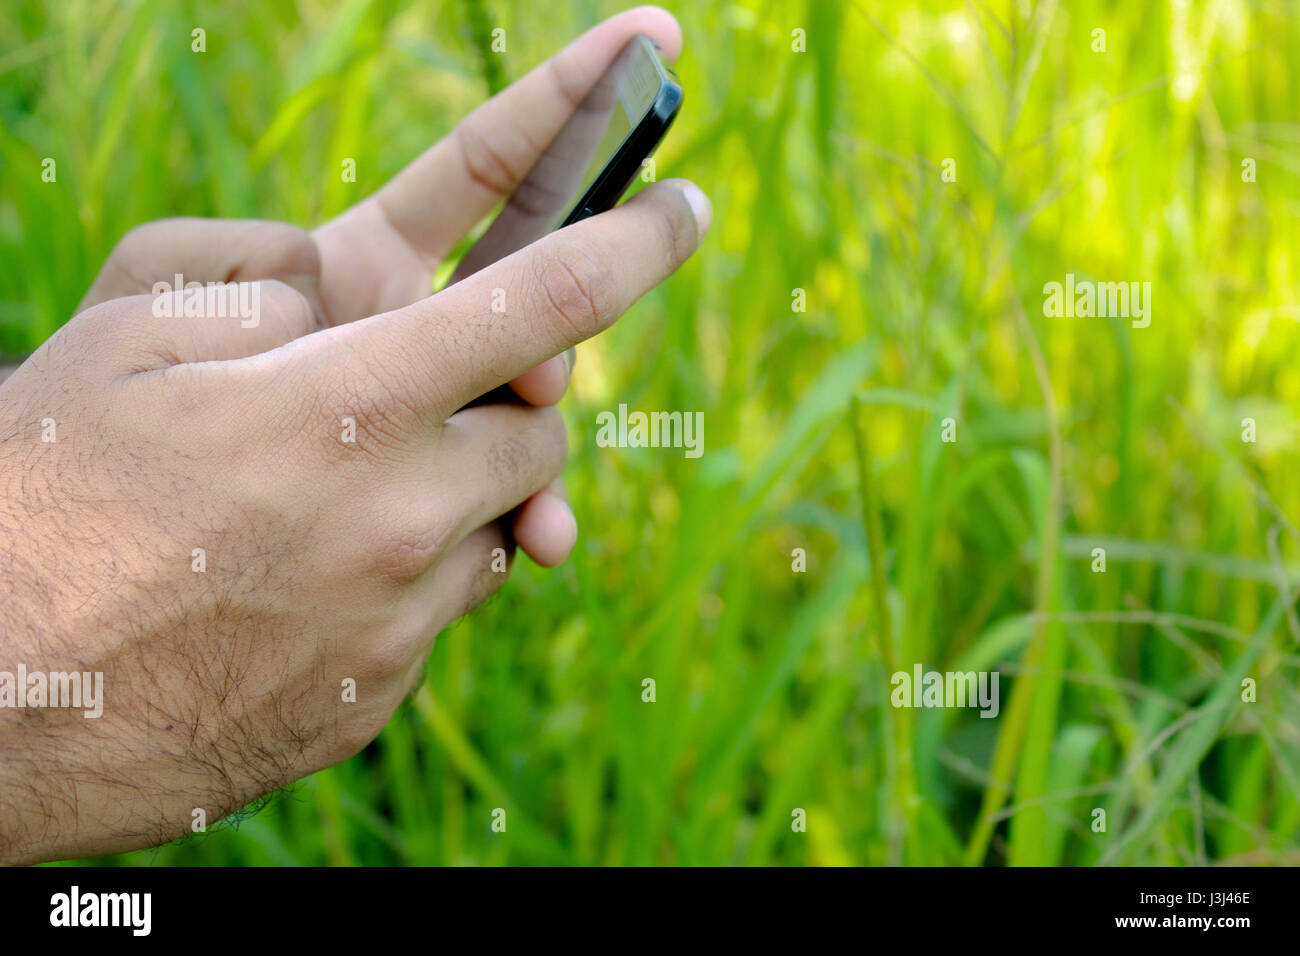 Cerca de la ajetreada adolescencia o persona charlando o mensajería y jugar con aplicaciones en un smartphone móvil con el telón de fondo de un campo de hierba verde abierto escénica Foto de stock